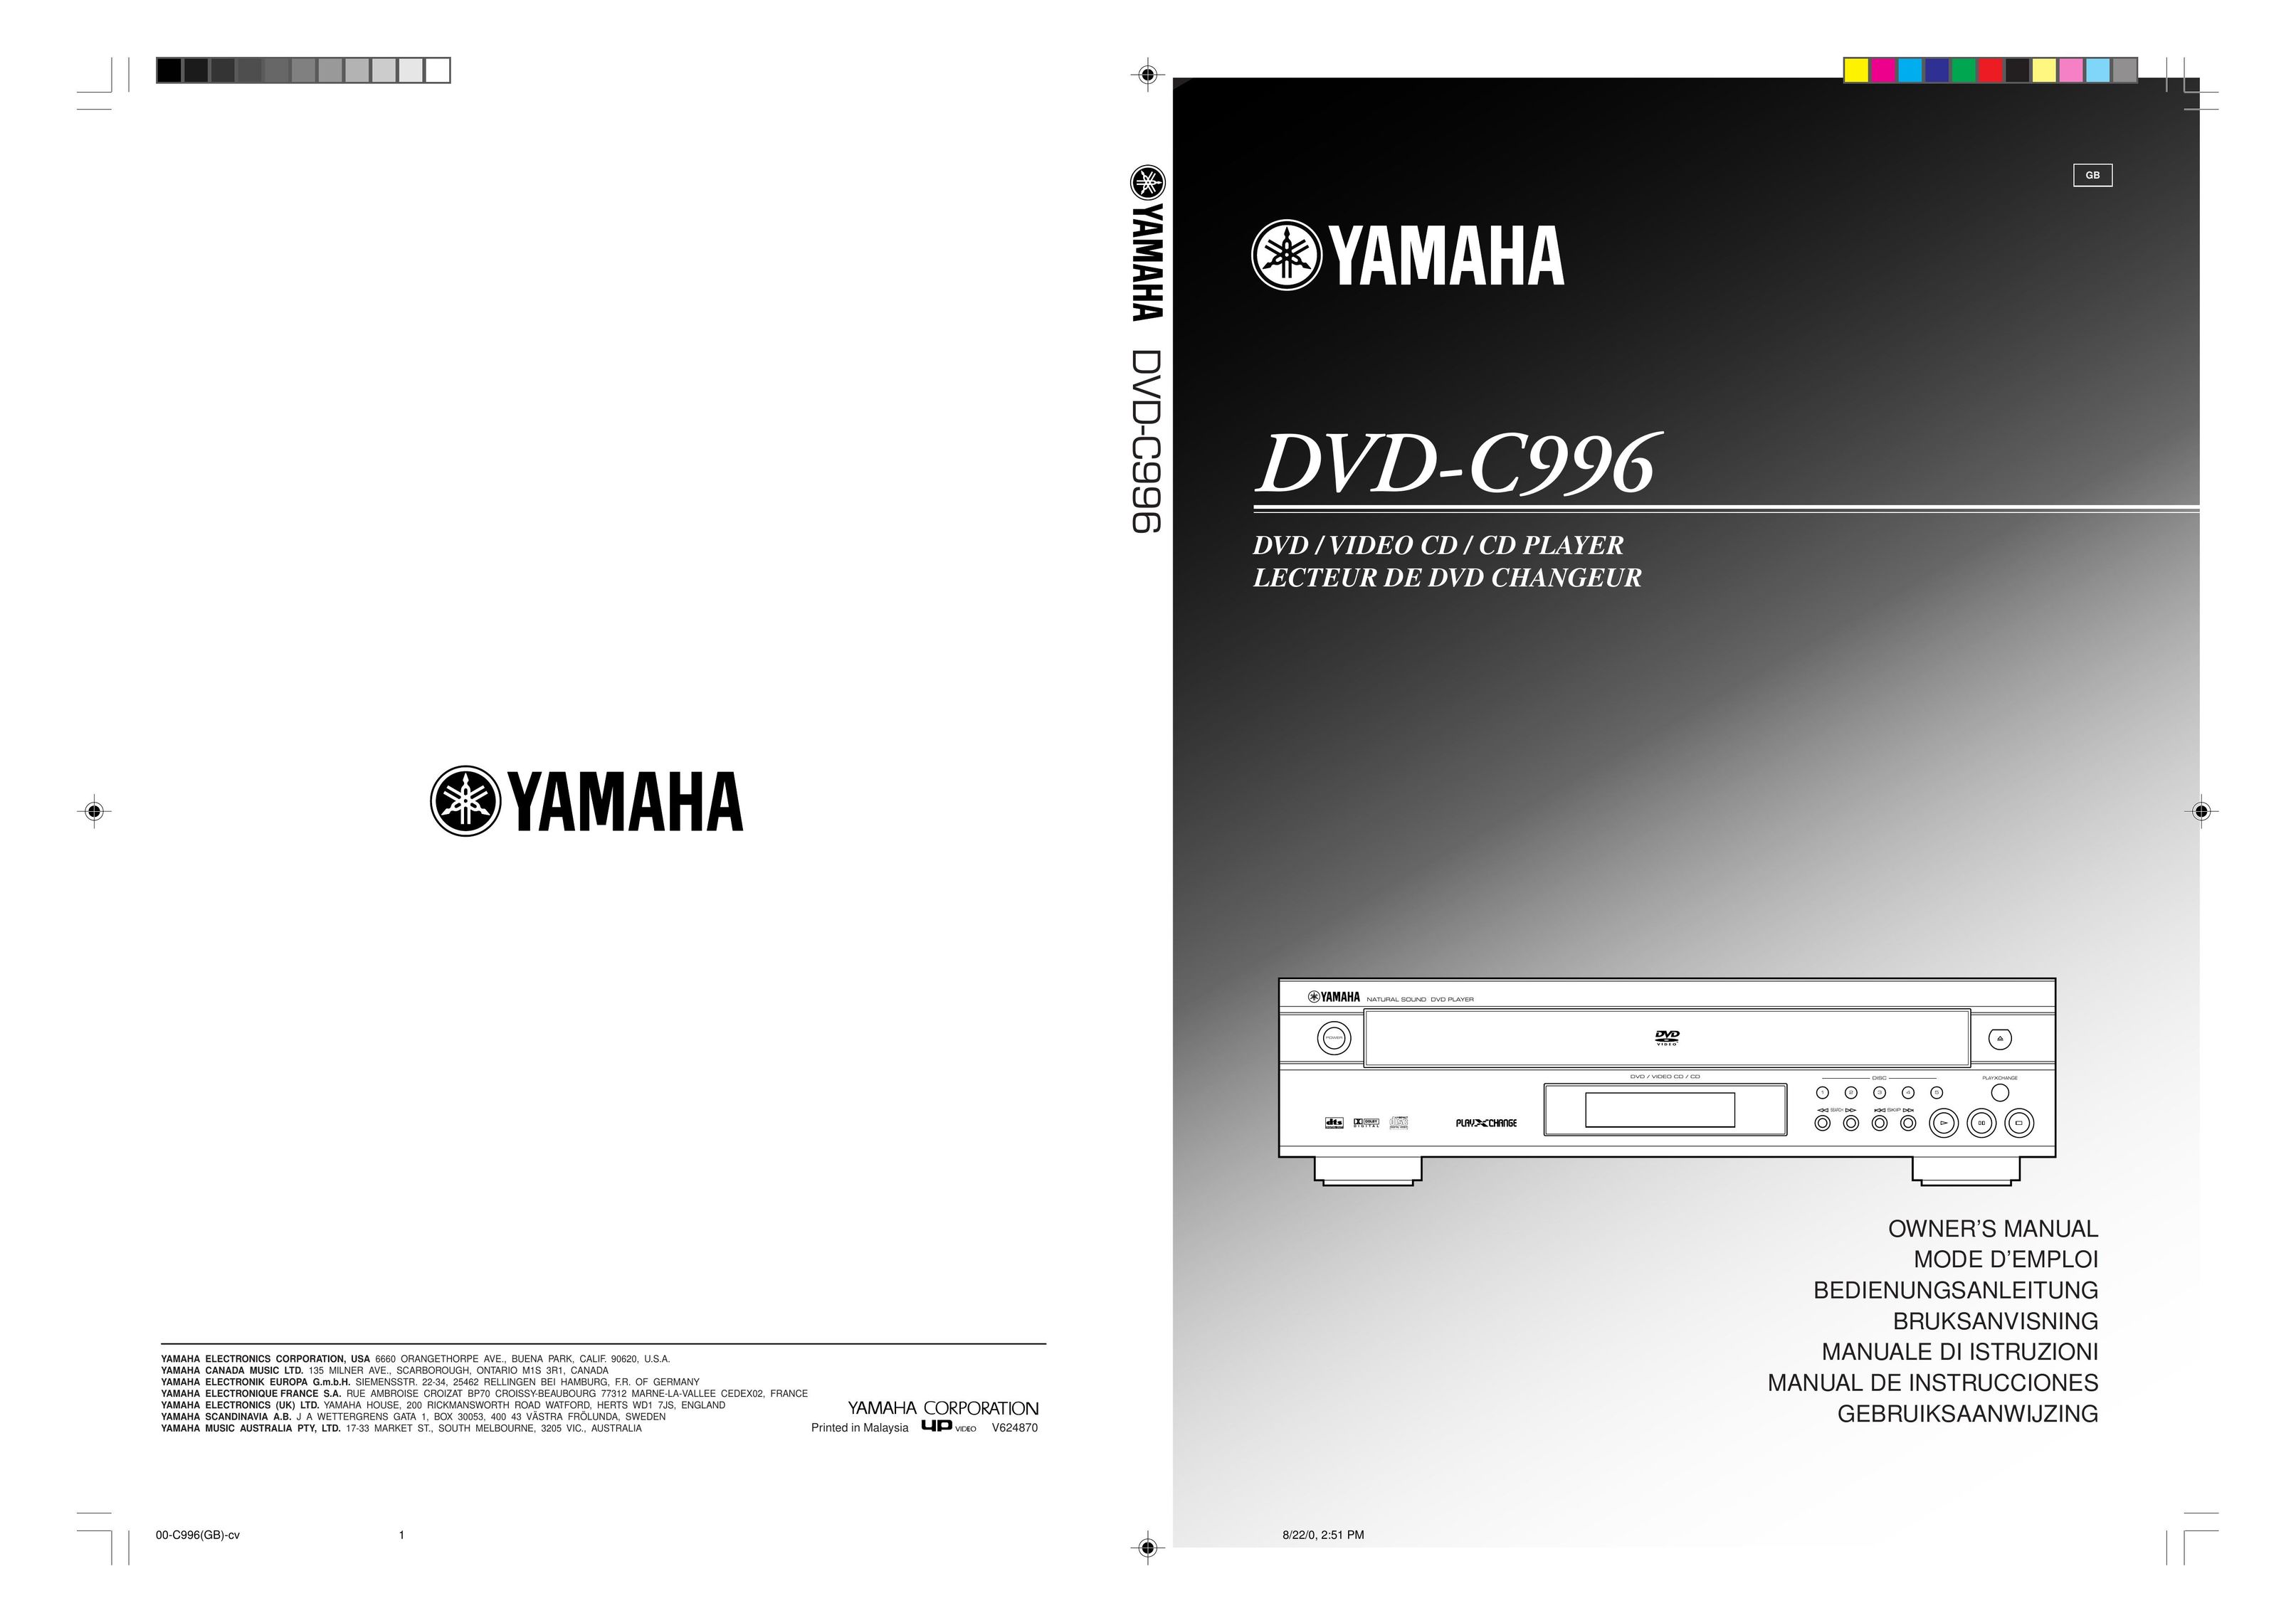 Yamaha DVD-C996 DVD Player User Manual